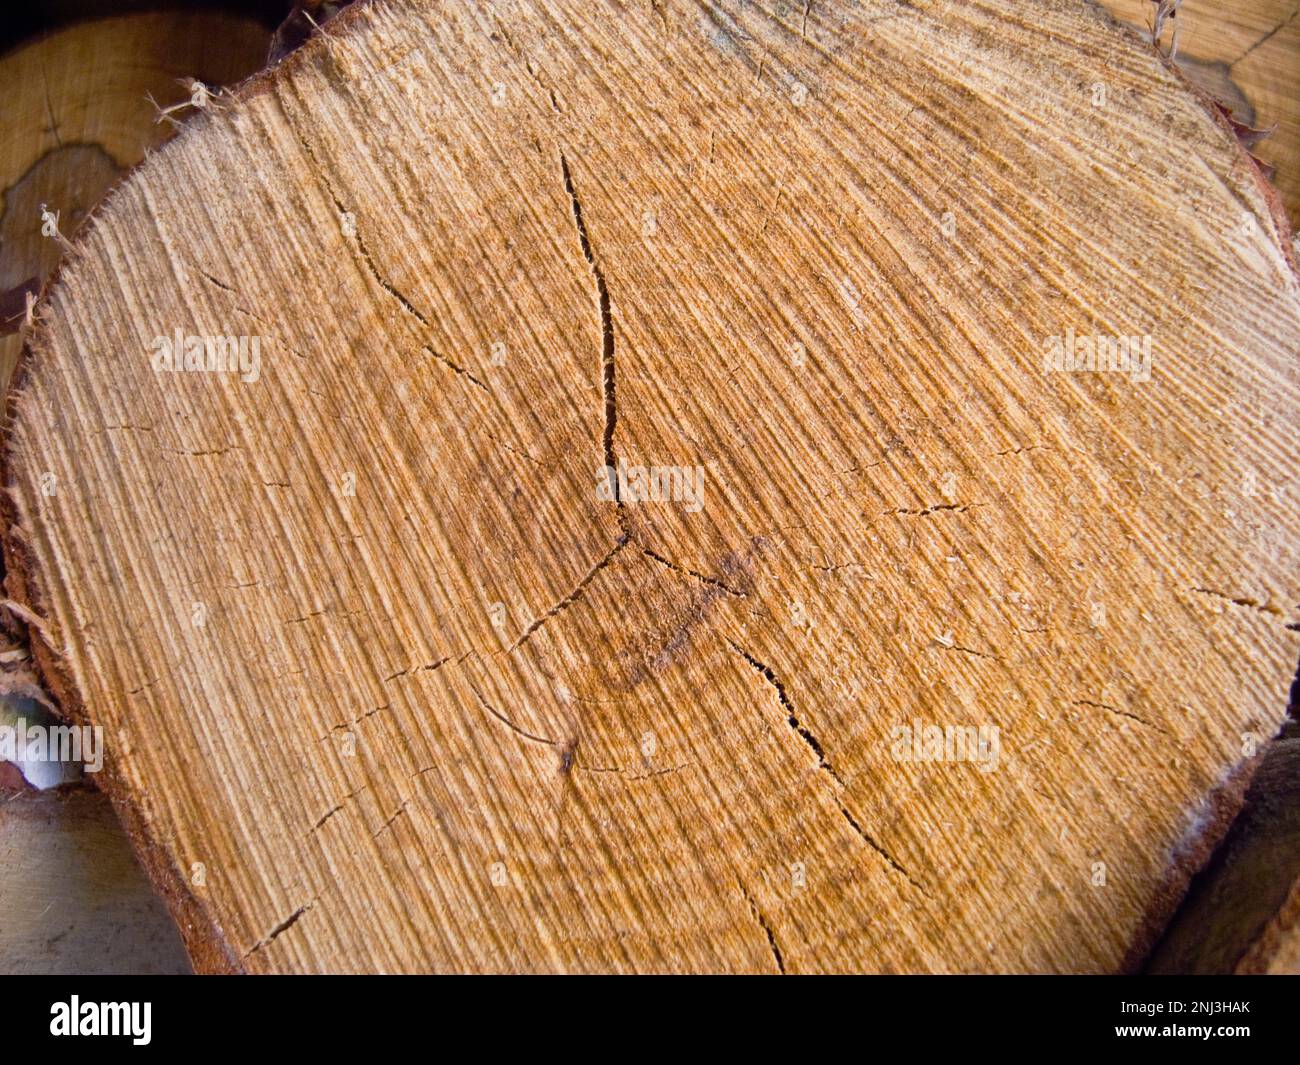 Arrière-plans, bois, coupe à travers le bois montrant des anneaux et le modèle de croissance. Banque D'Images